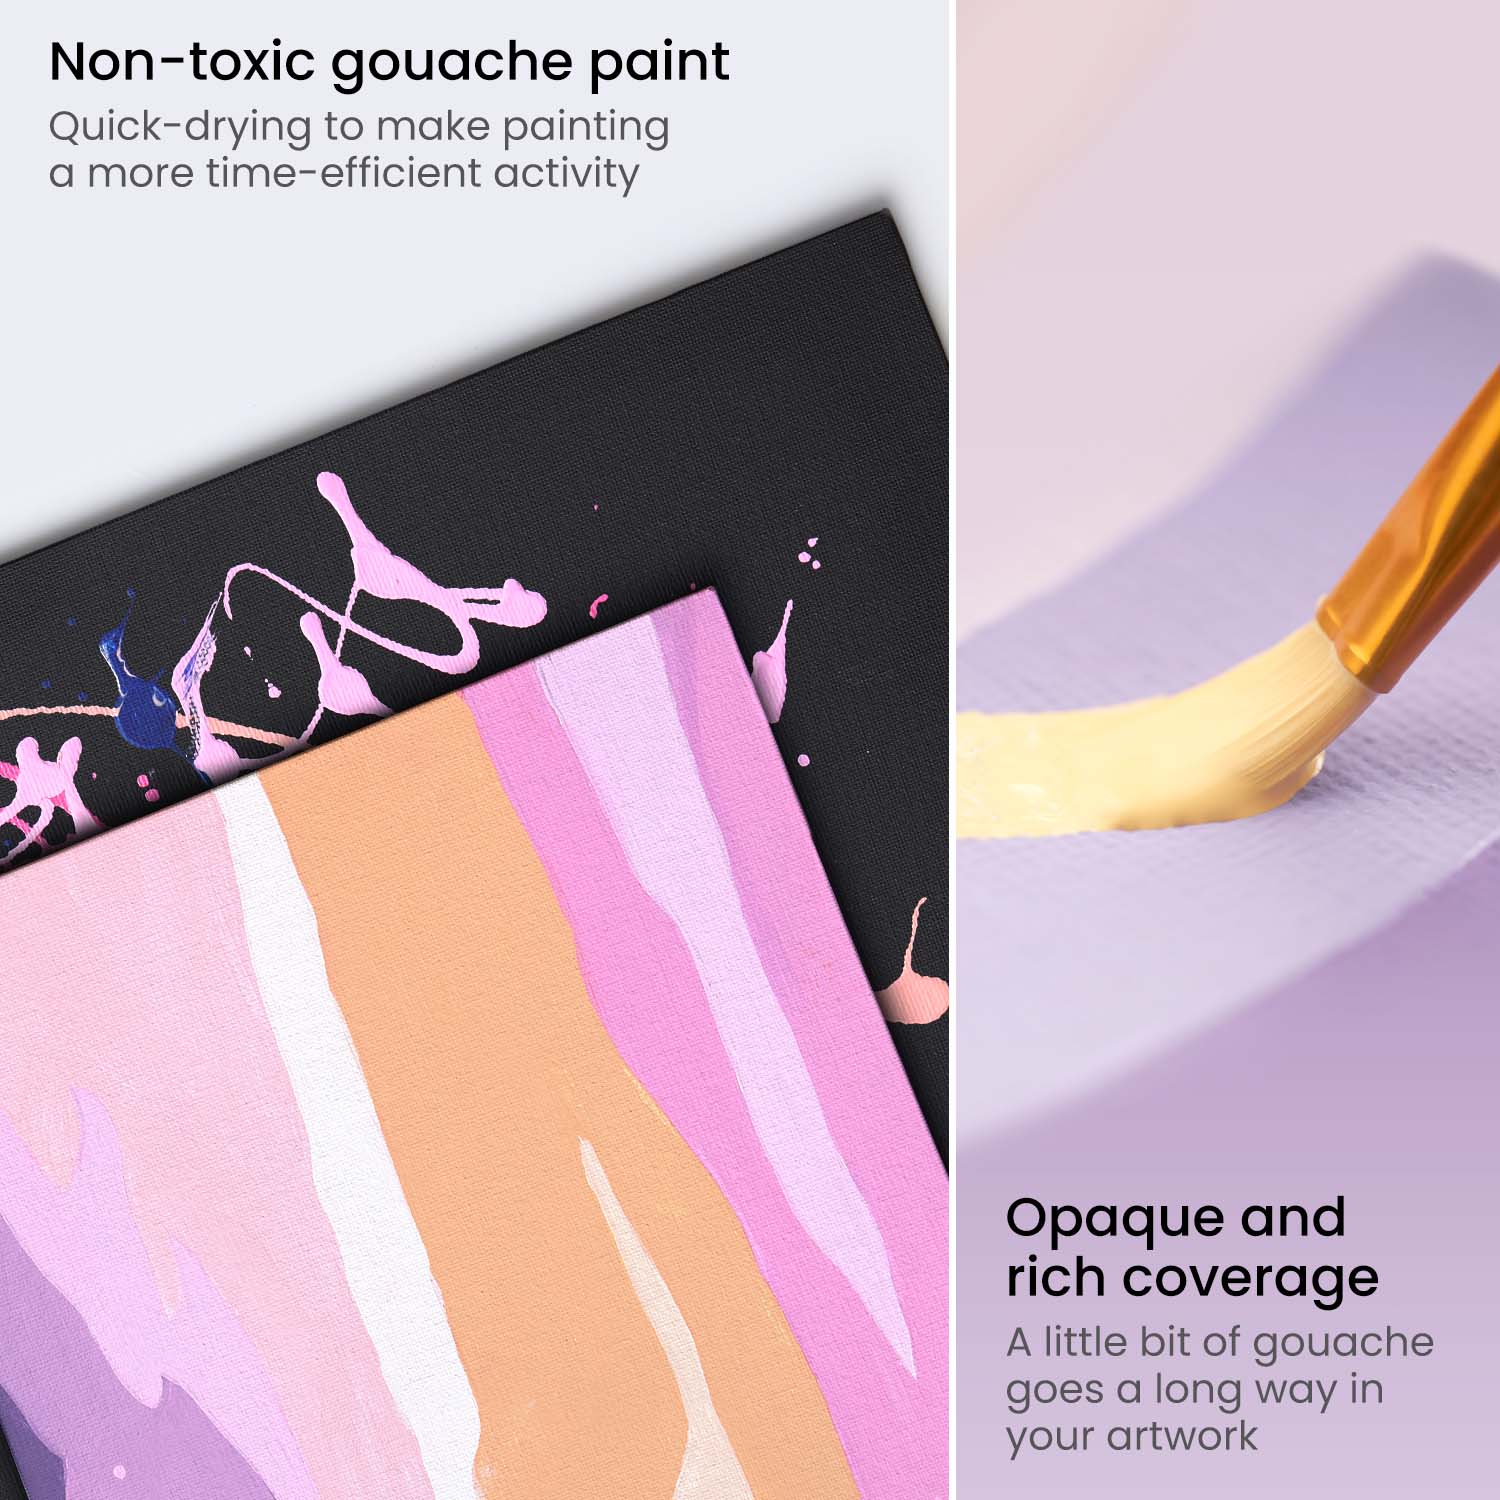 My Favorite Art Supplies - oil paint, watercolor, gouache, pastel & more!